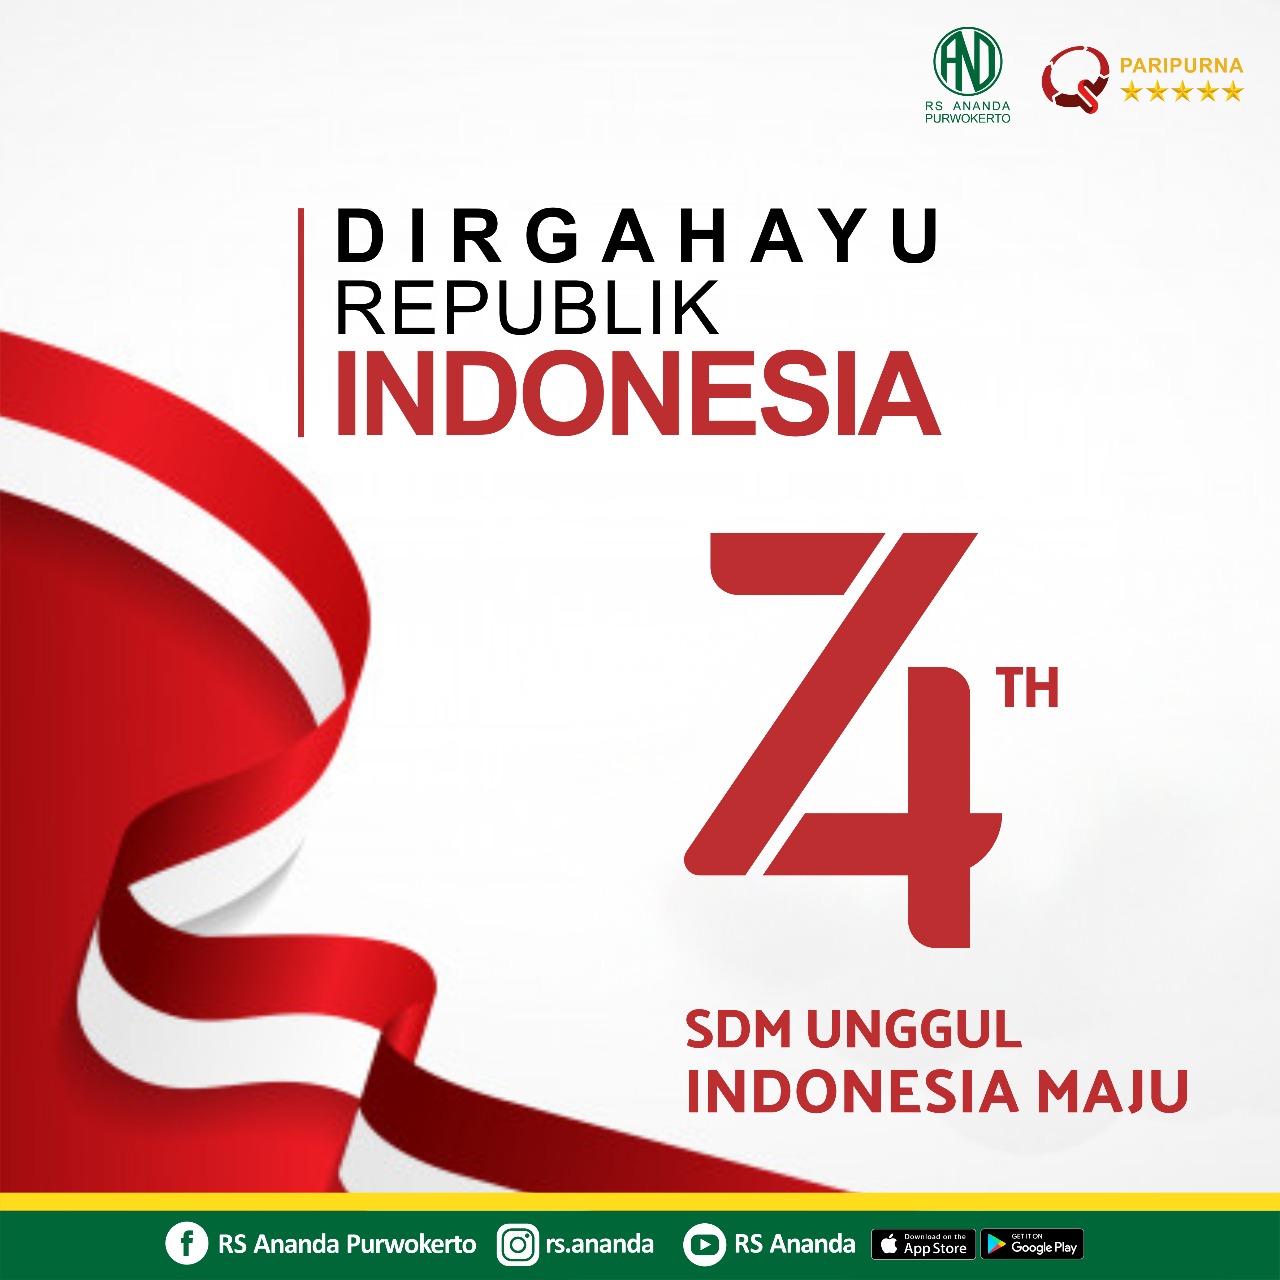 dirgahayu republik indonesia ke-74 tahun DIRGAHAYU REPUBLIK INDONESIA KE-74 TAHUN WhatsApp Image 2019 08 15 at 20